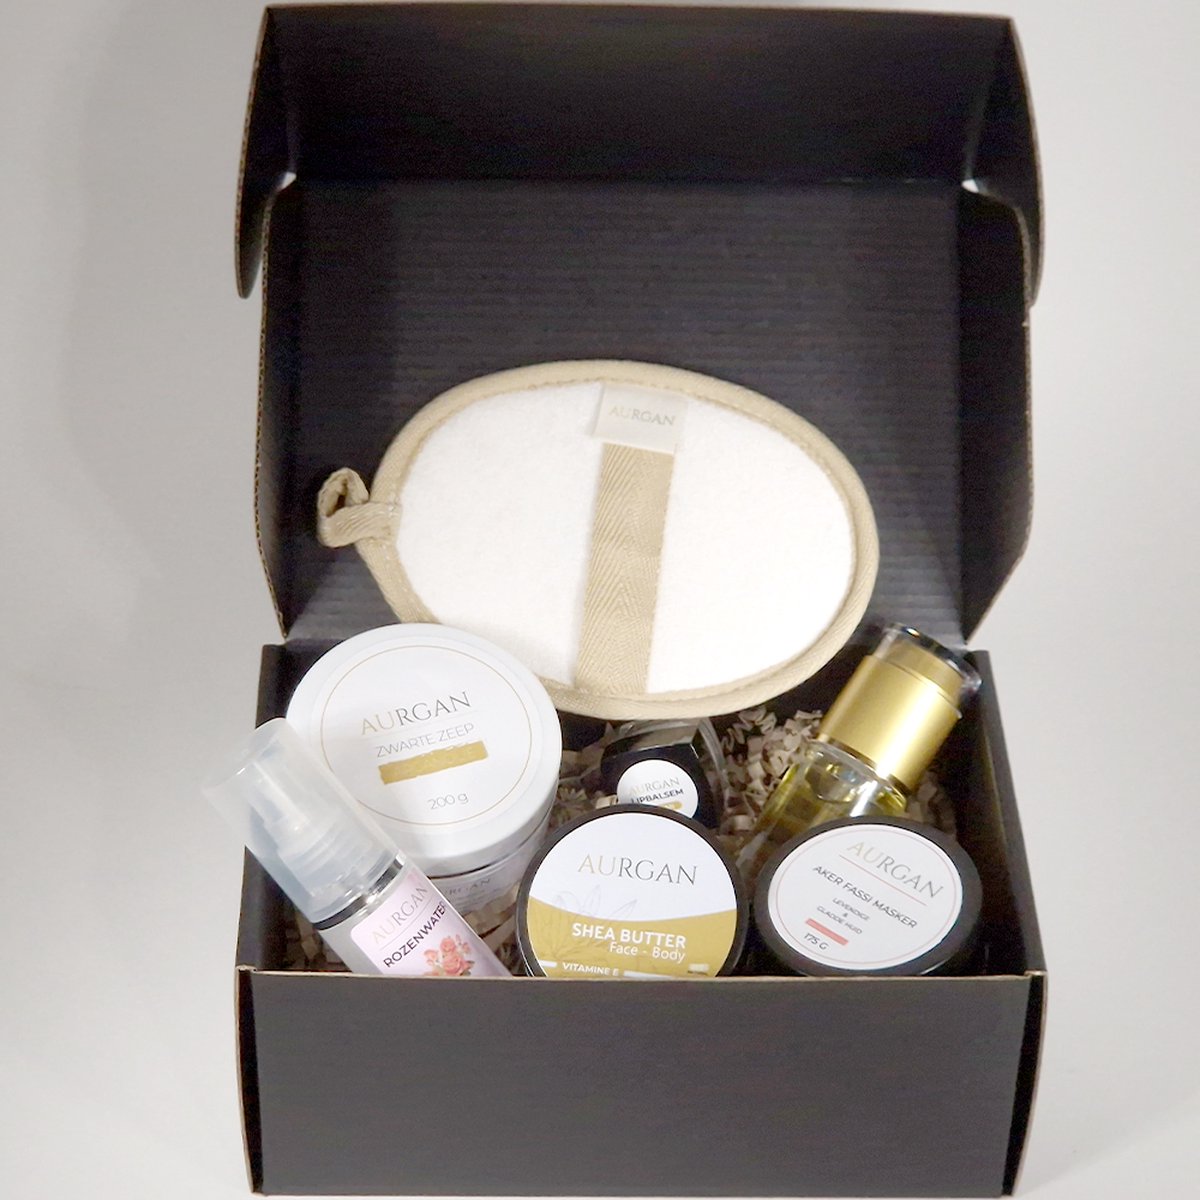 Aurgan Prestige Gift Box - Aker Fassi / Relatiegeschenk - Arganolie kadopakket - Natuurlijke Cosmetica - Shea Butter - cadeau